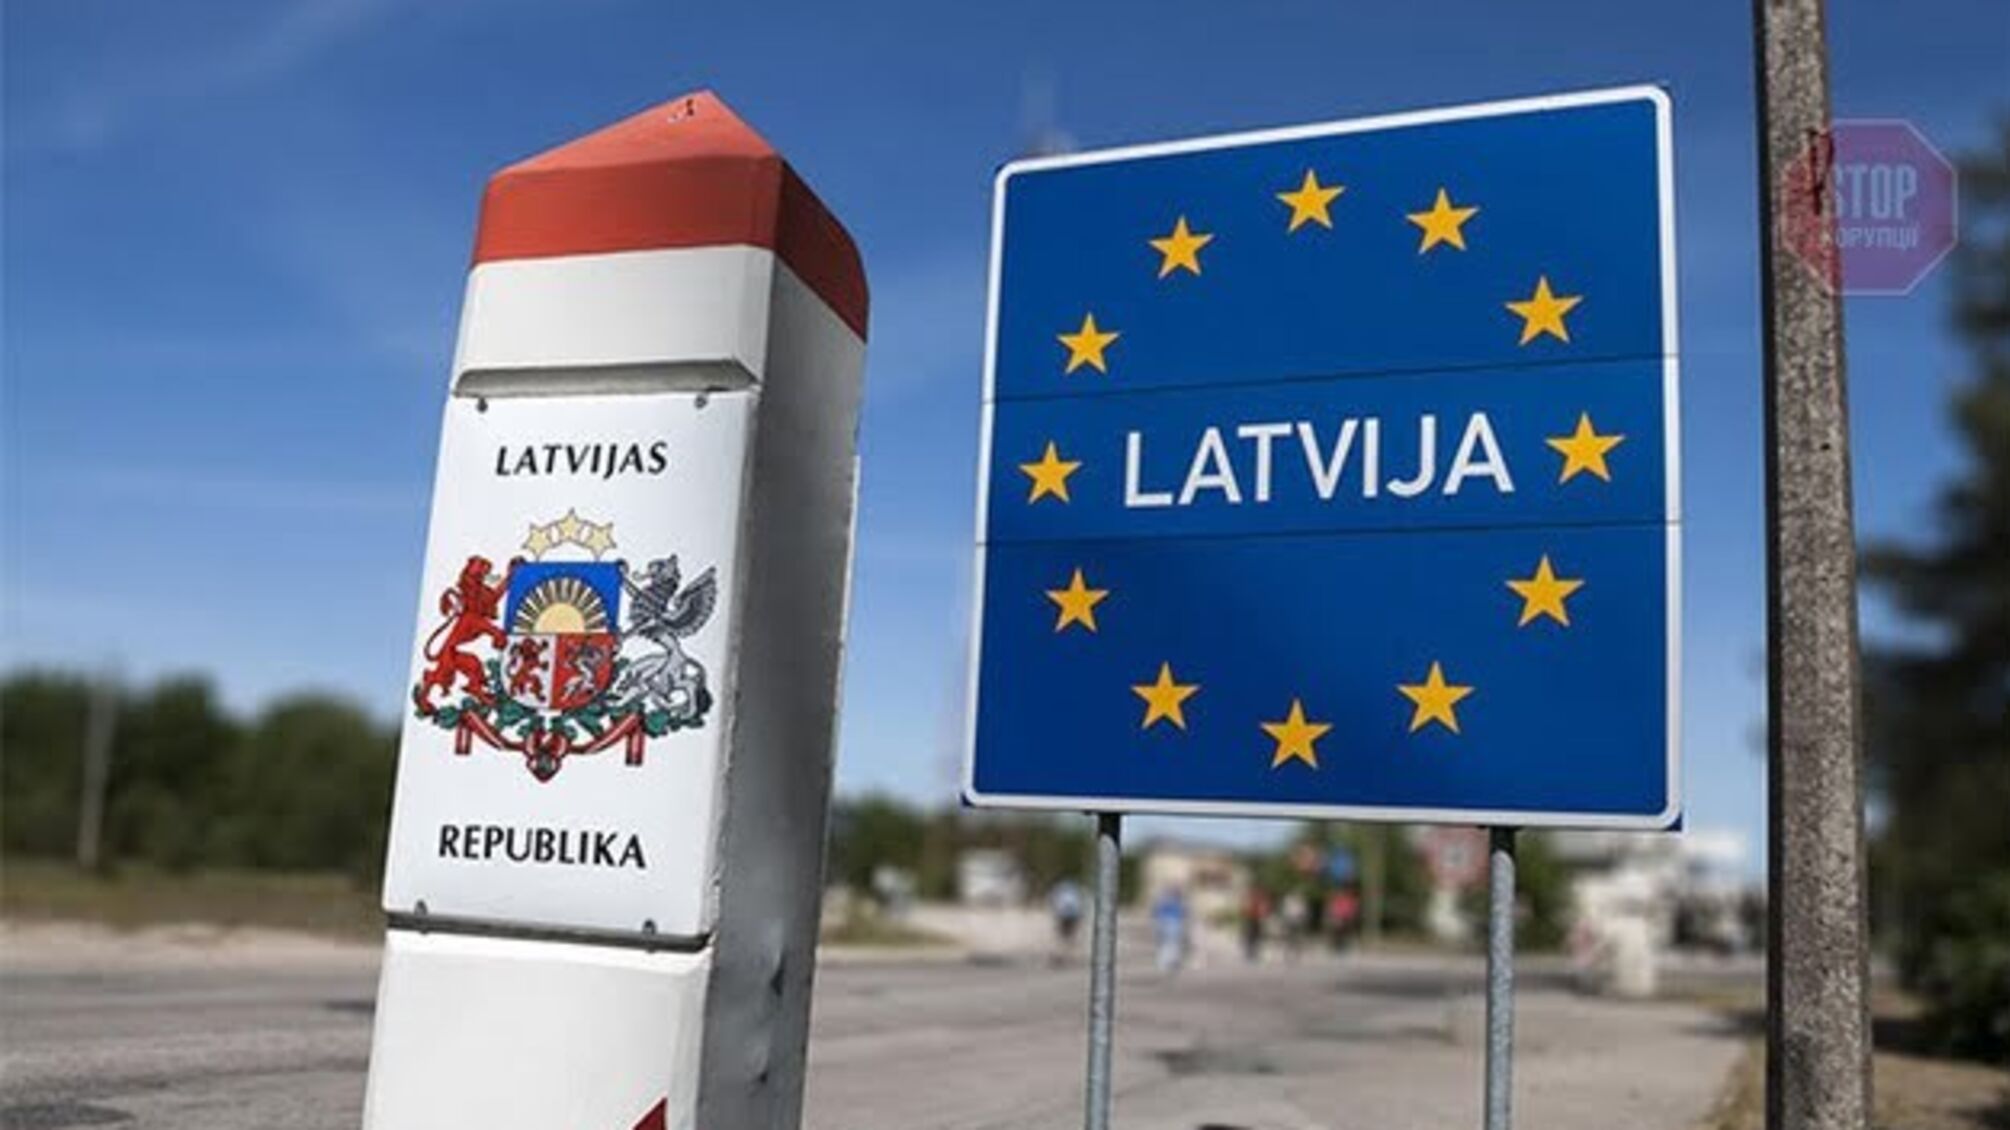 Українець пропонував хабар на кордоні з Латвією - його арештували